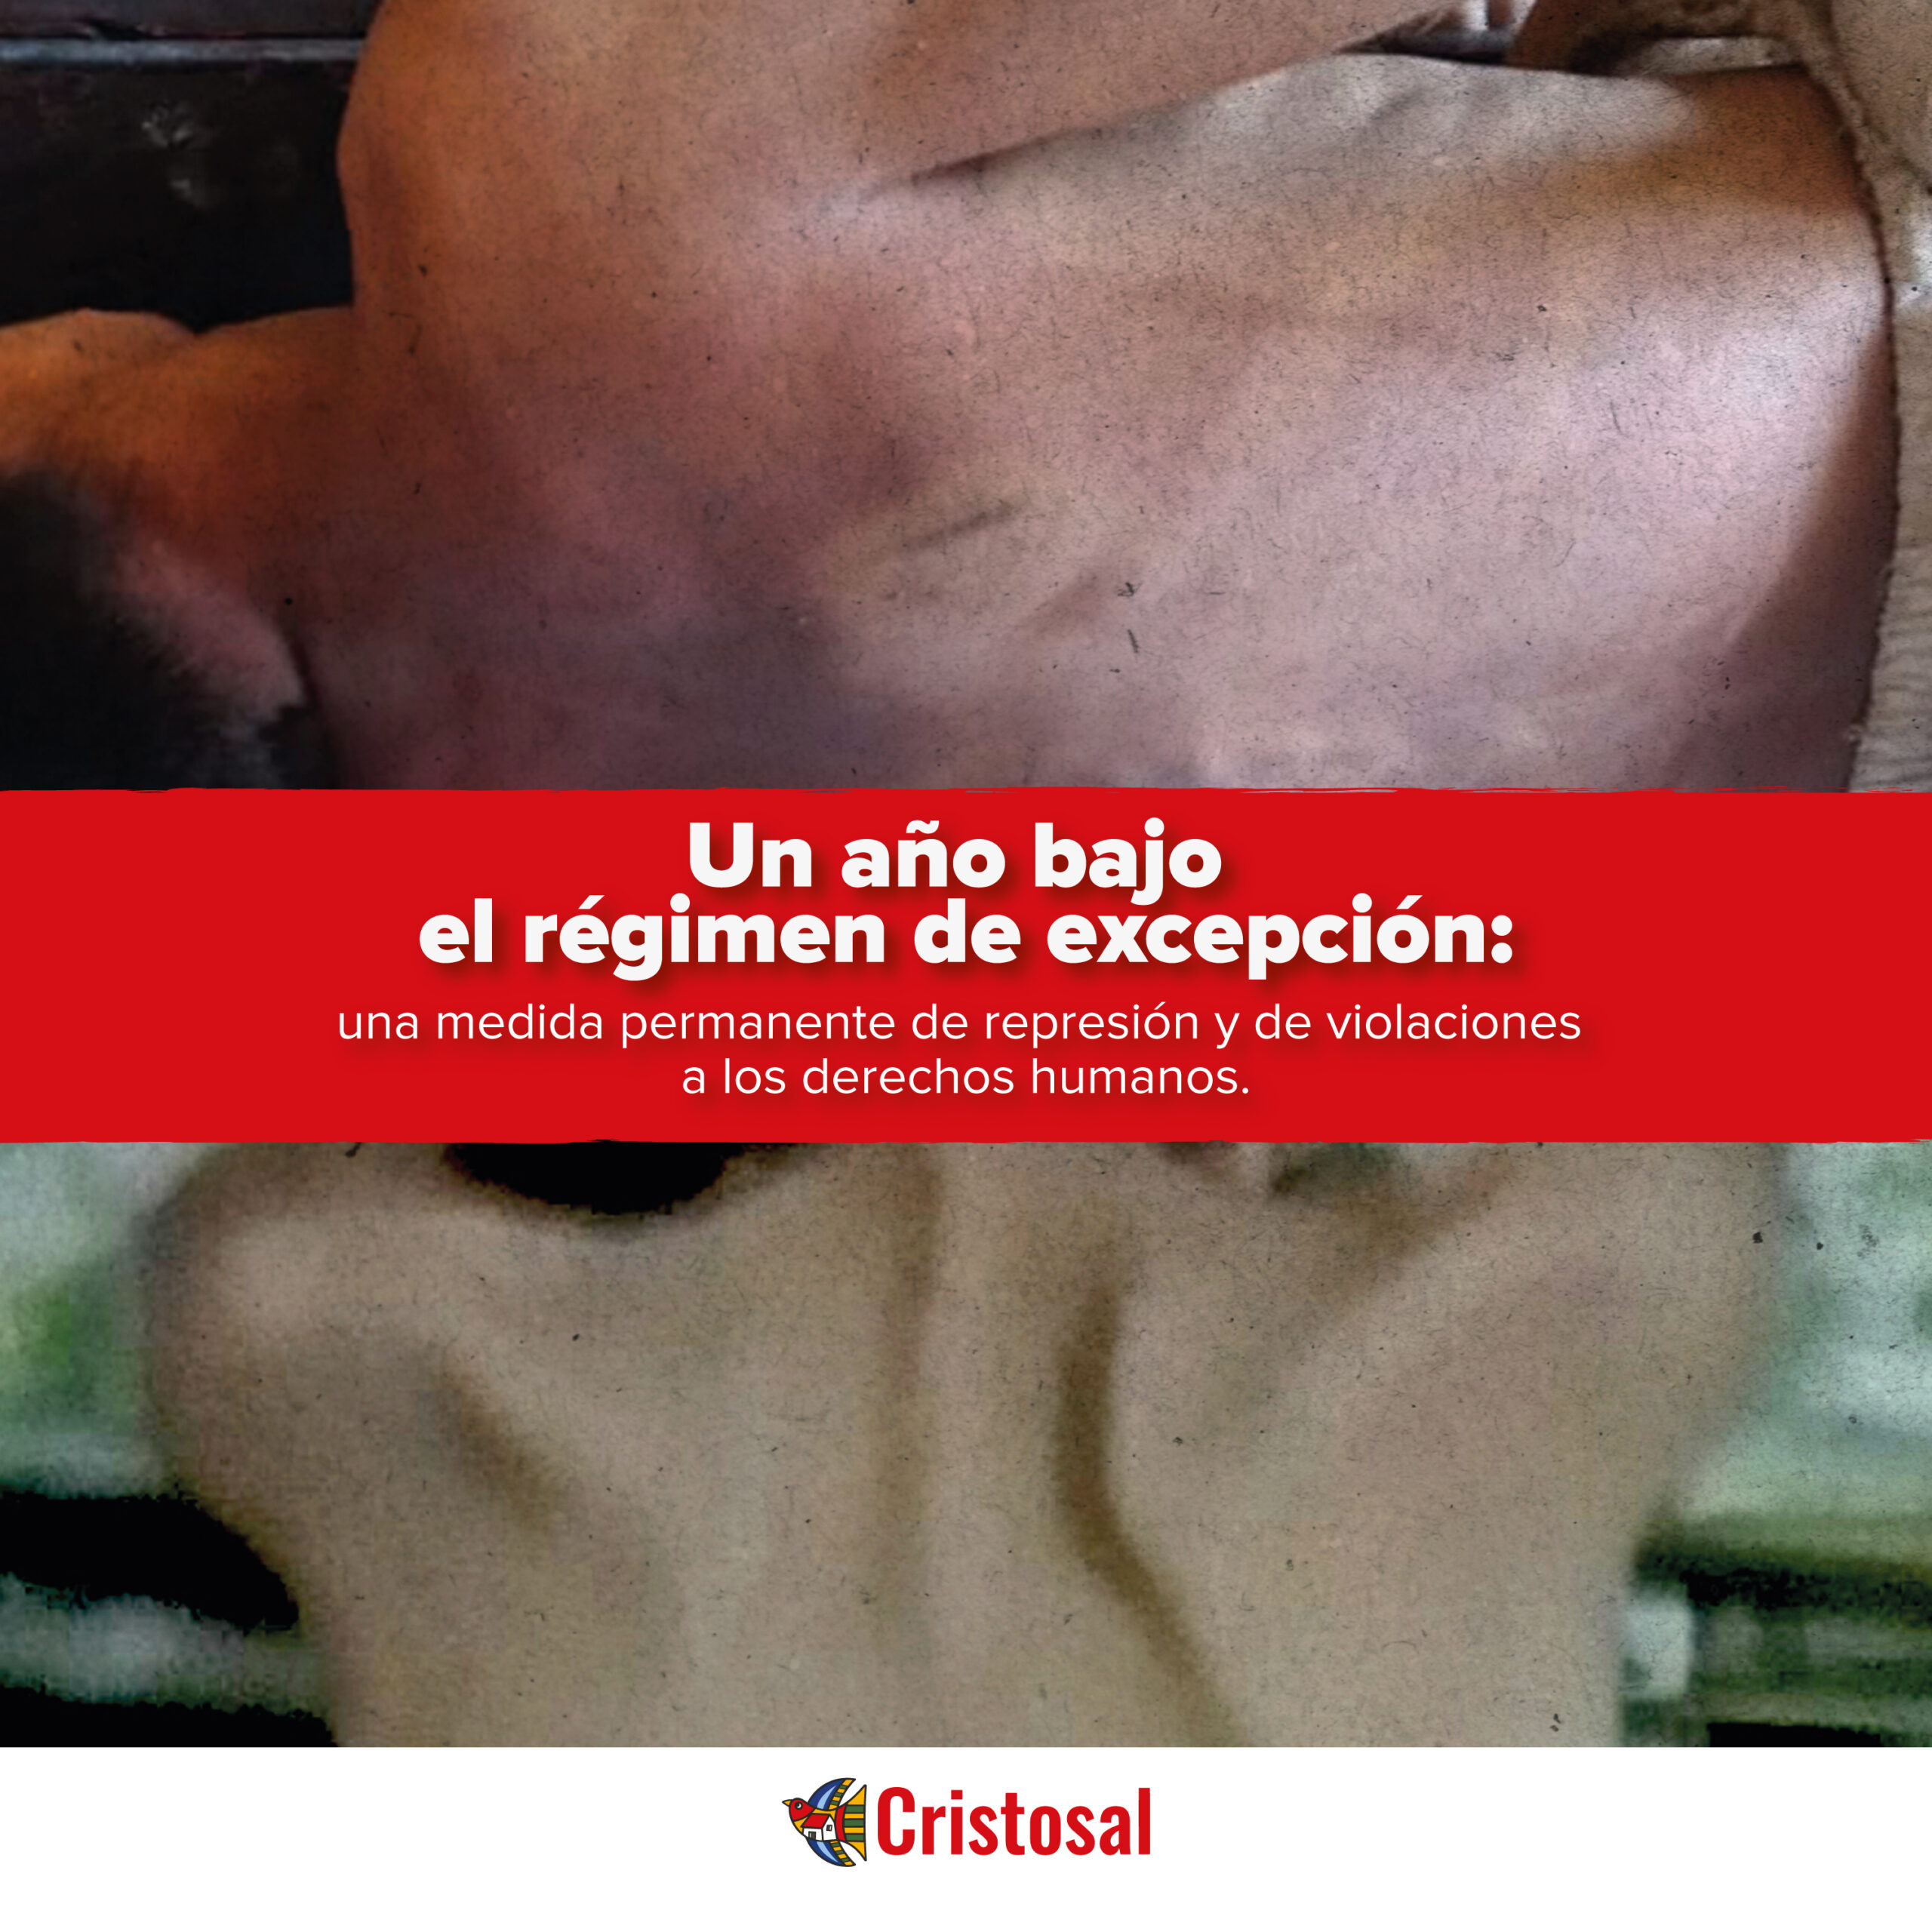 Informe “Un año bajo el régimen de excepción: una medida permanente de represión y violaciones a los derechos humanos”